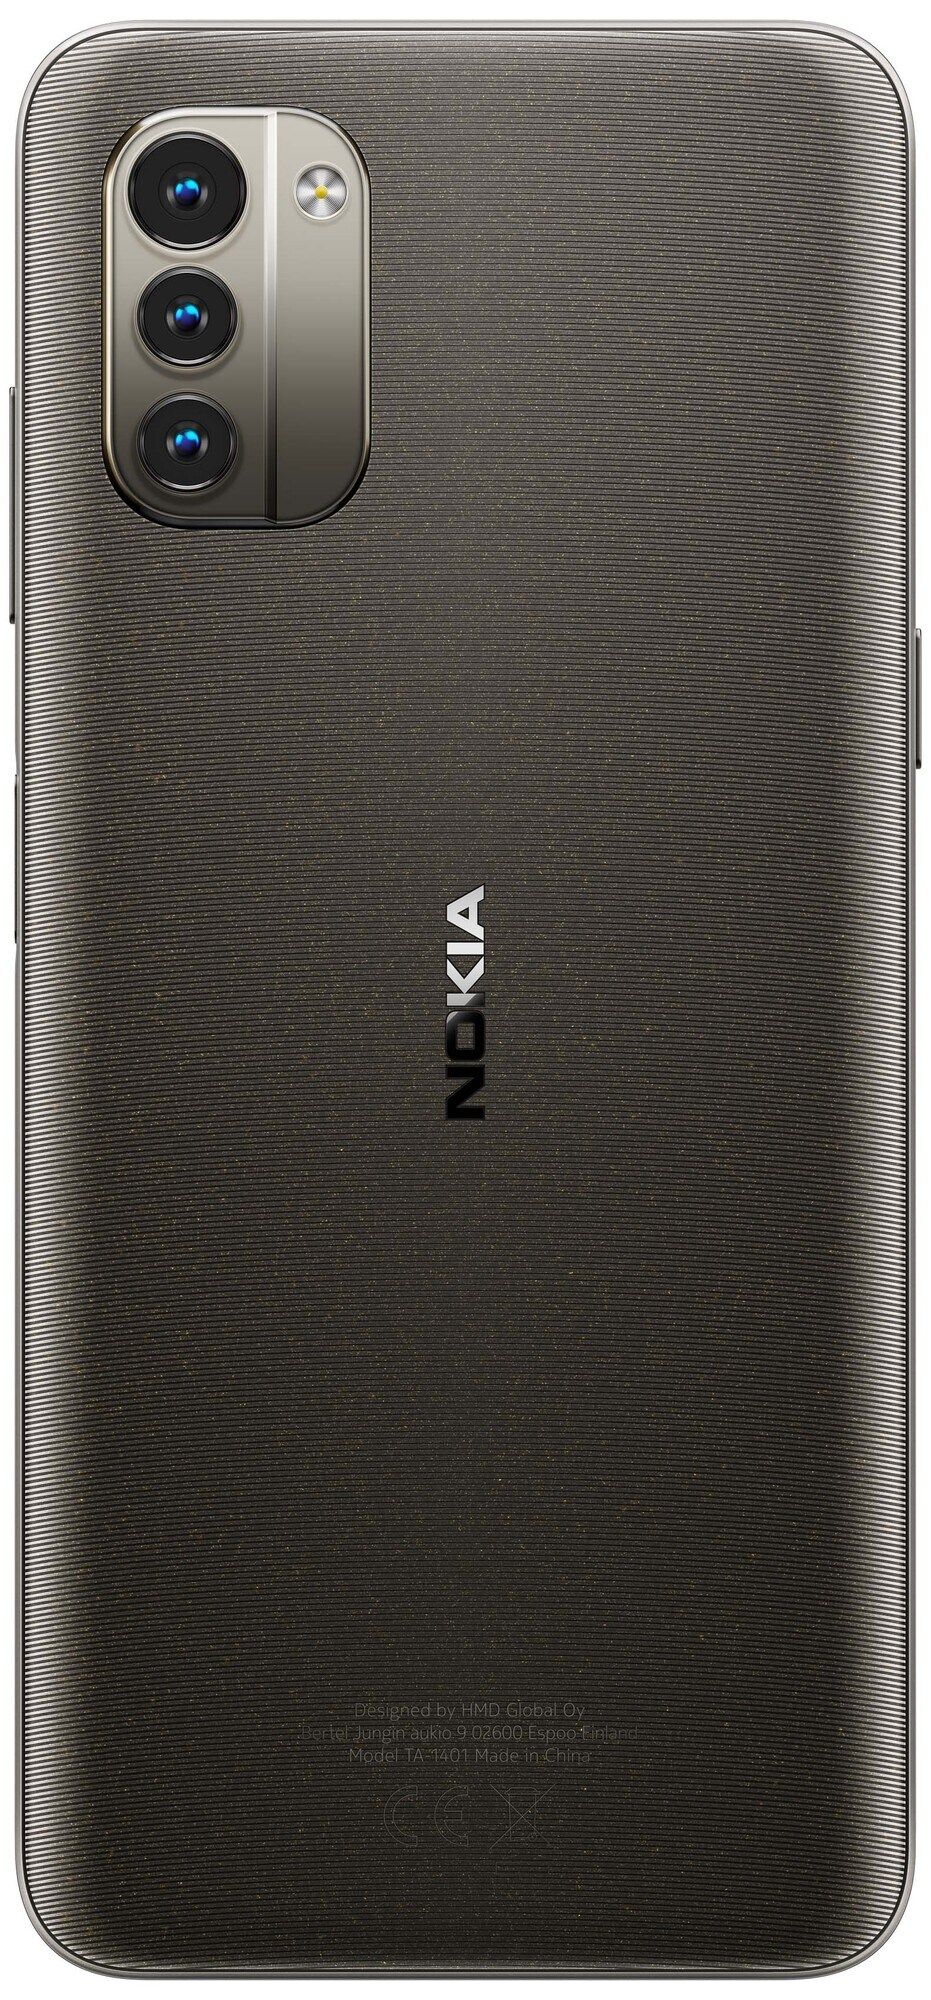 ภาพเรนเดอร์ Nokia G21 เผยหน้าจอ Notch หยดน้ำ, กล้องหลัง 3 ตัว และตัวเครื่องมีให้เลือก 3 สี